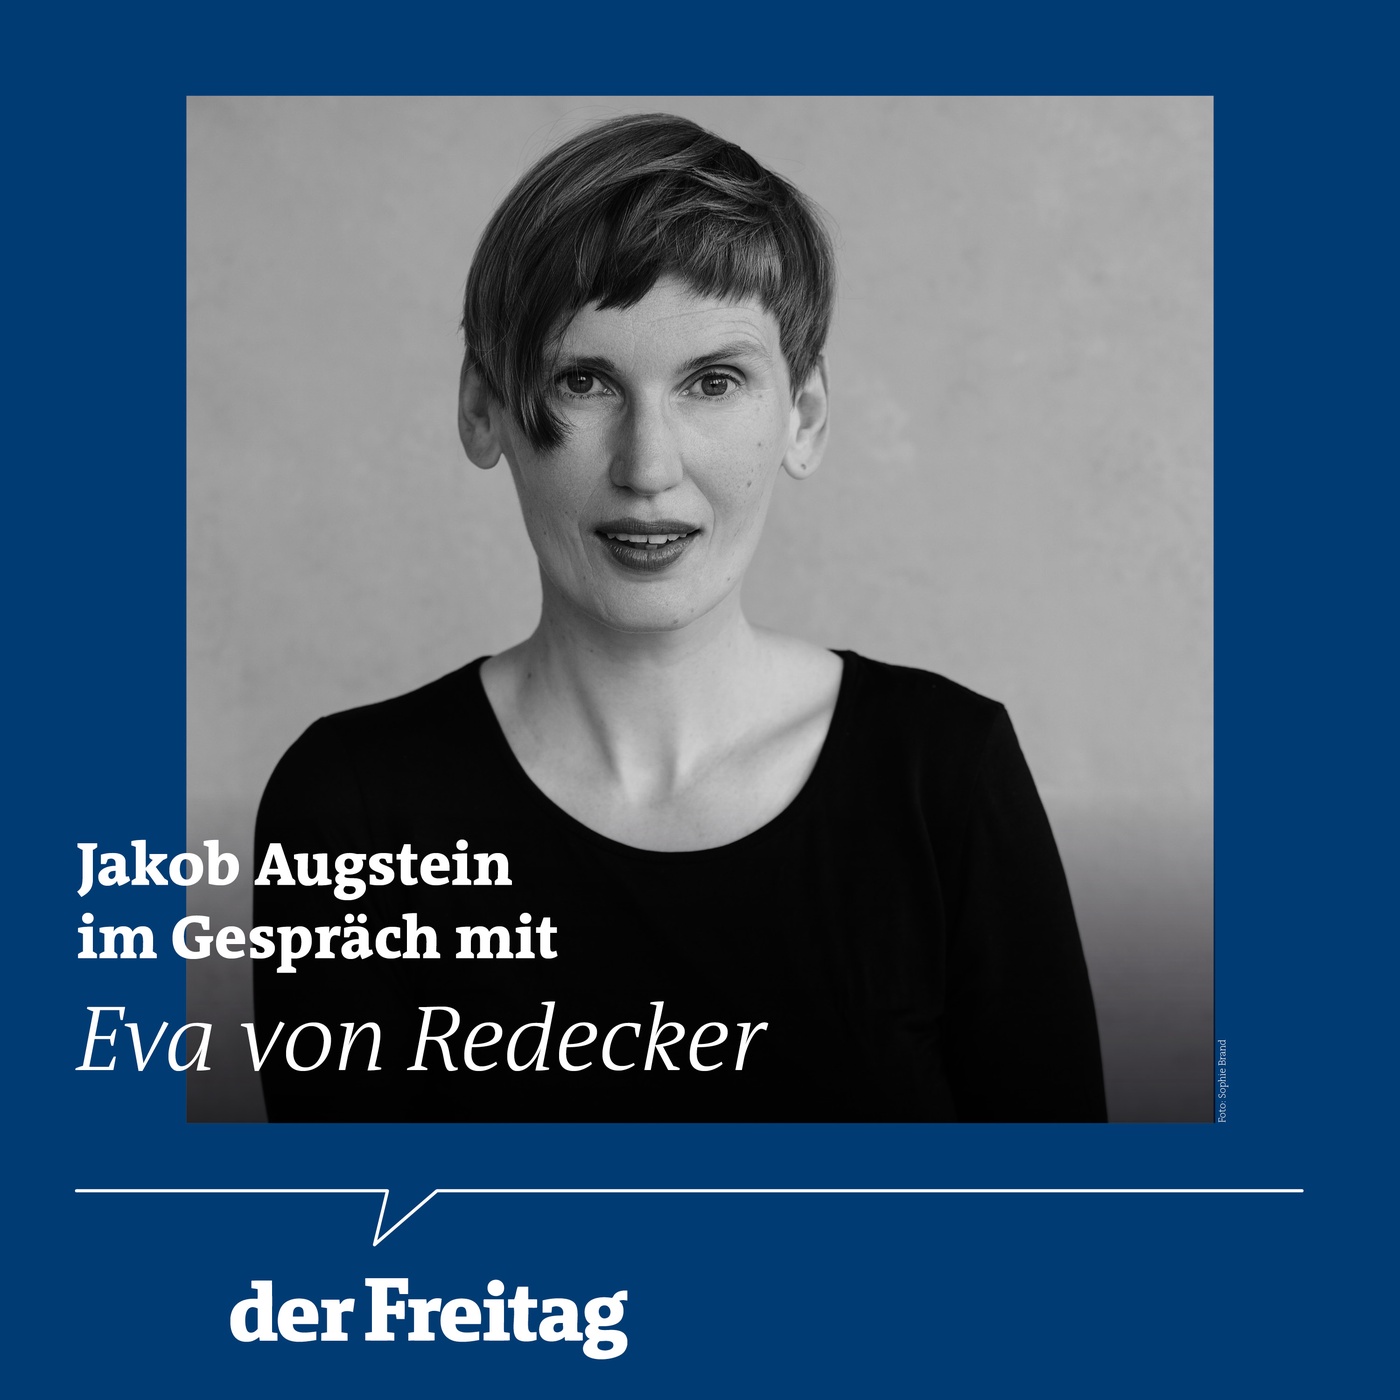 Jakob Augstein im Gespräch mit Eva von Redecker: „Freiheit bedeutet, Zeit zu haben“